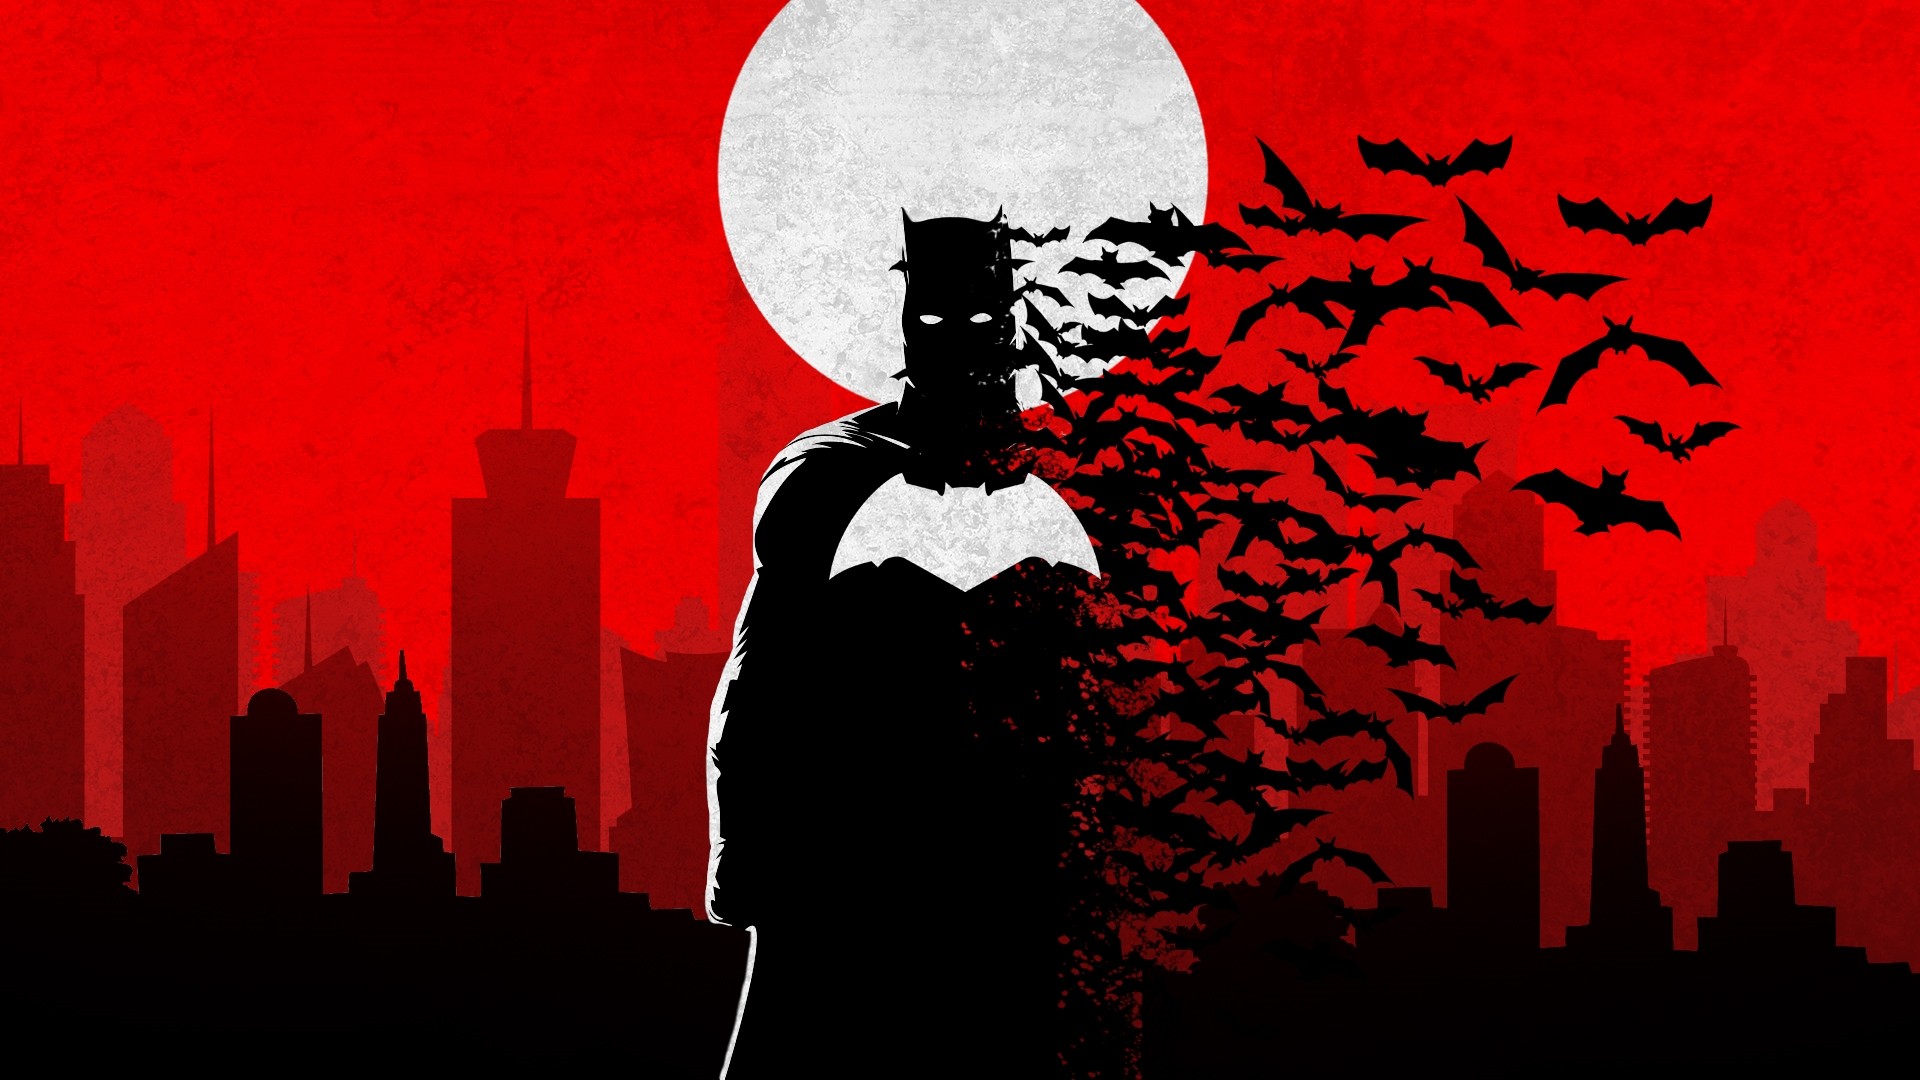 Batman Art Wallpaper theme